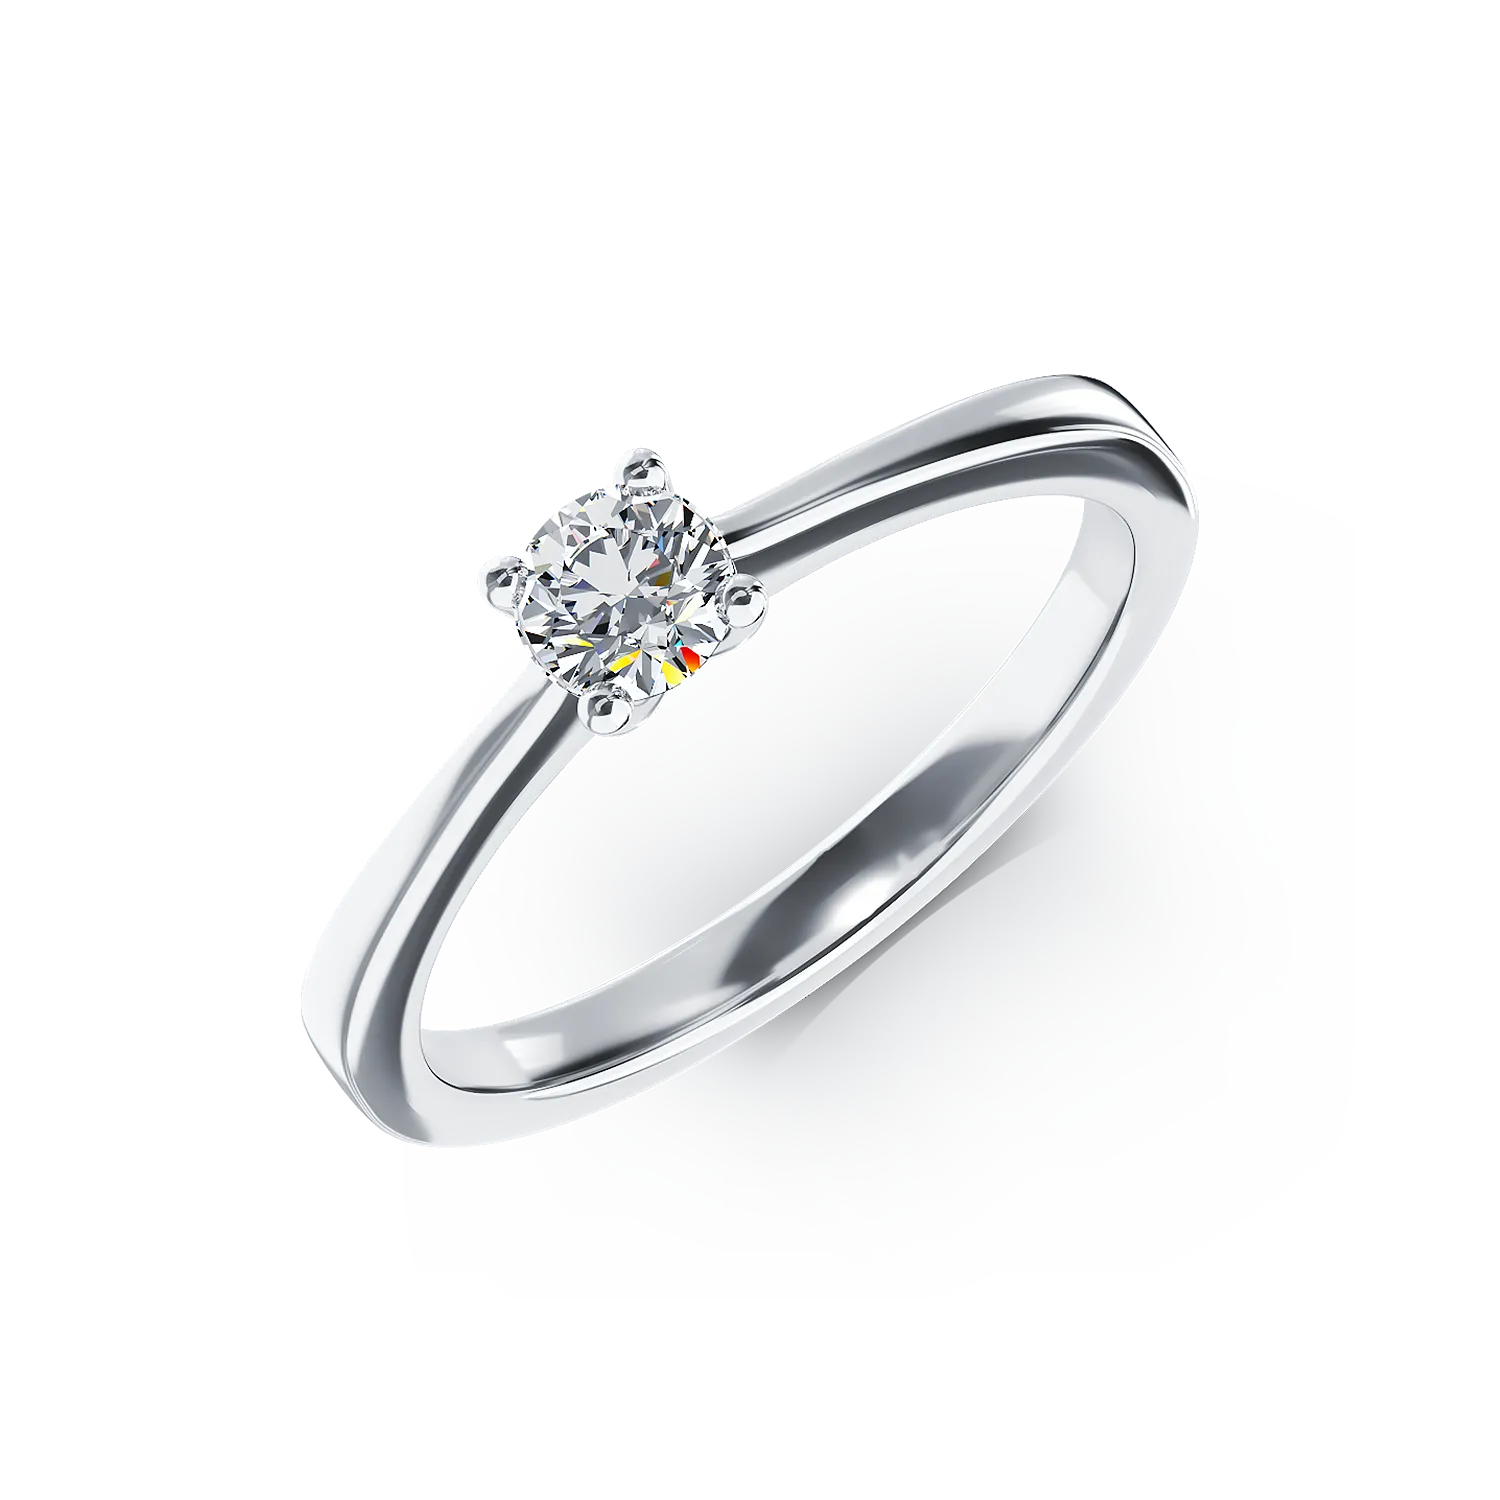 Eljegyzési gyűrű 18K-os fehér aranyból 0,31ct gyémánttal. Gramm: 3,06